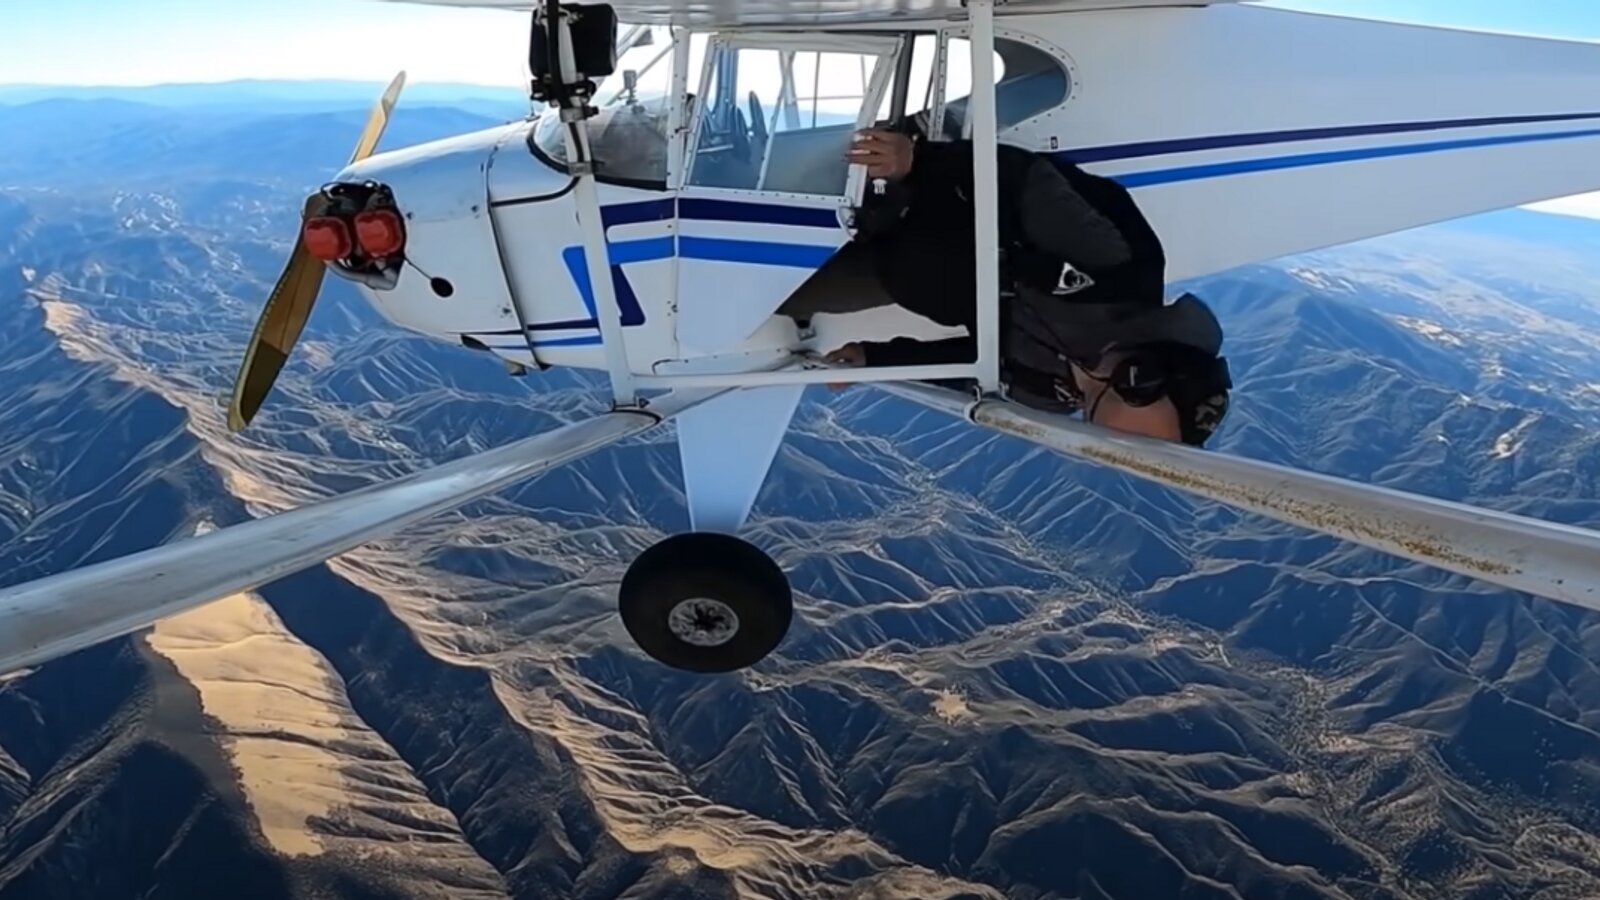 Ютубер разбил самолёт ради контента и спонсорской выплаты